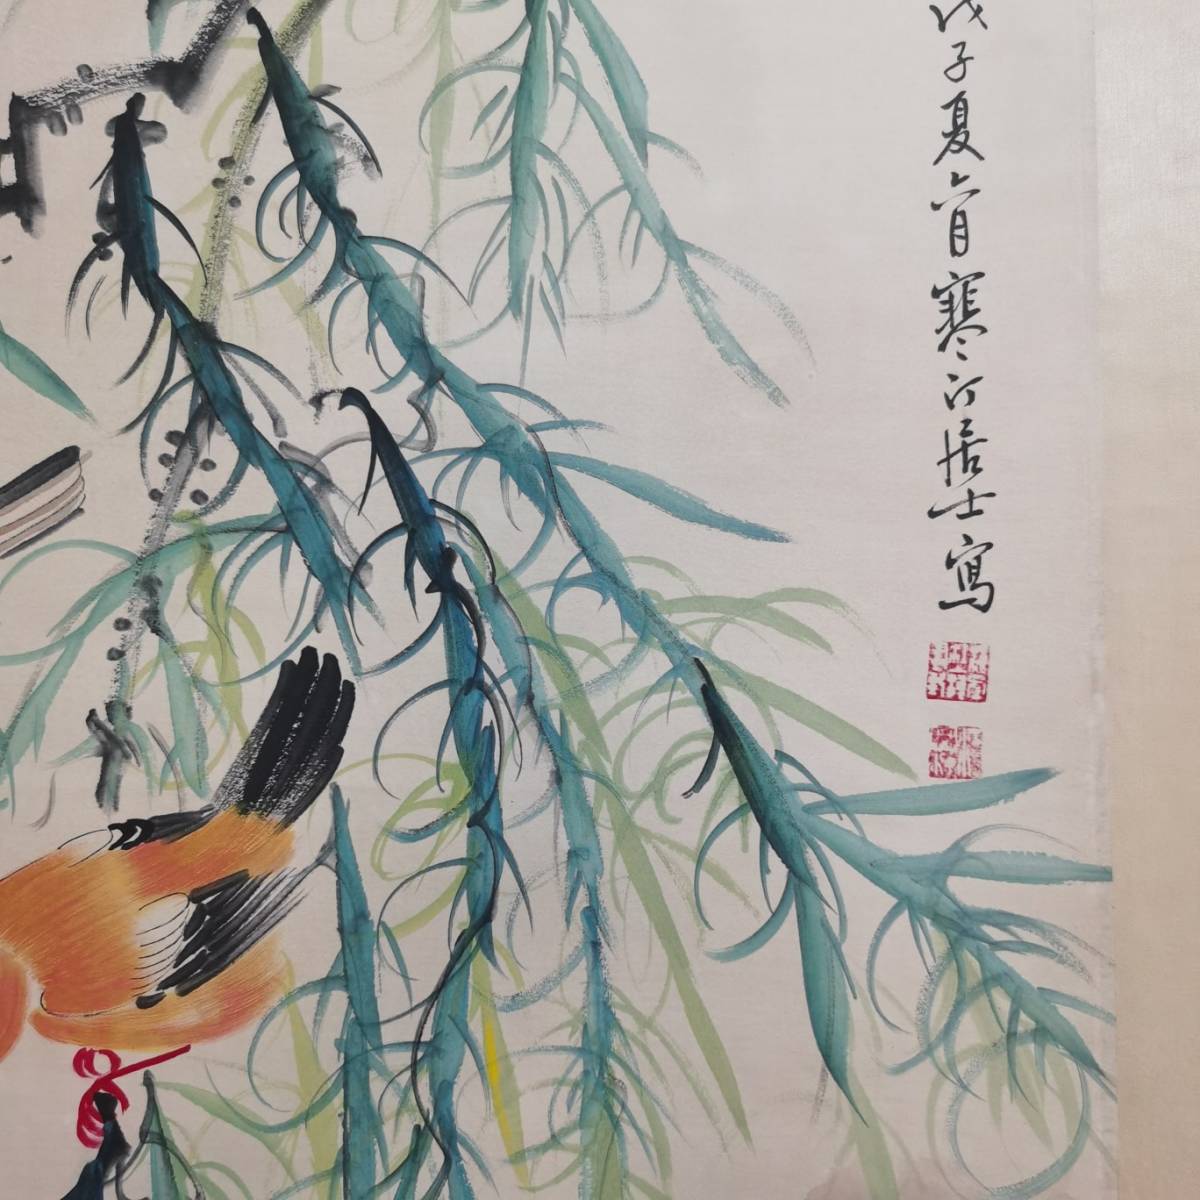 レア書法画 超美品 書画 古賞物 中国時代美術 掛軸